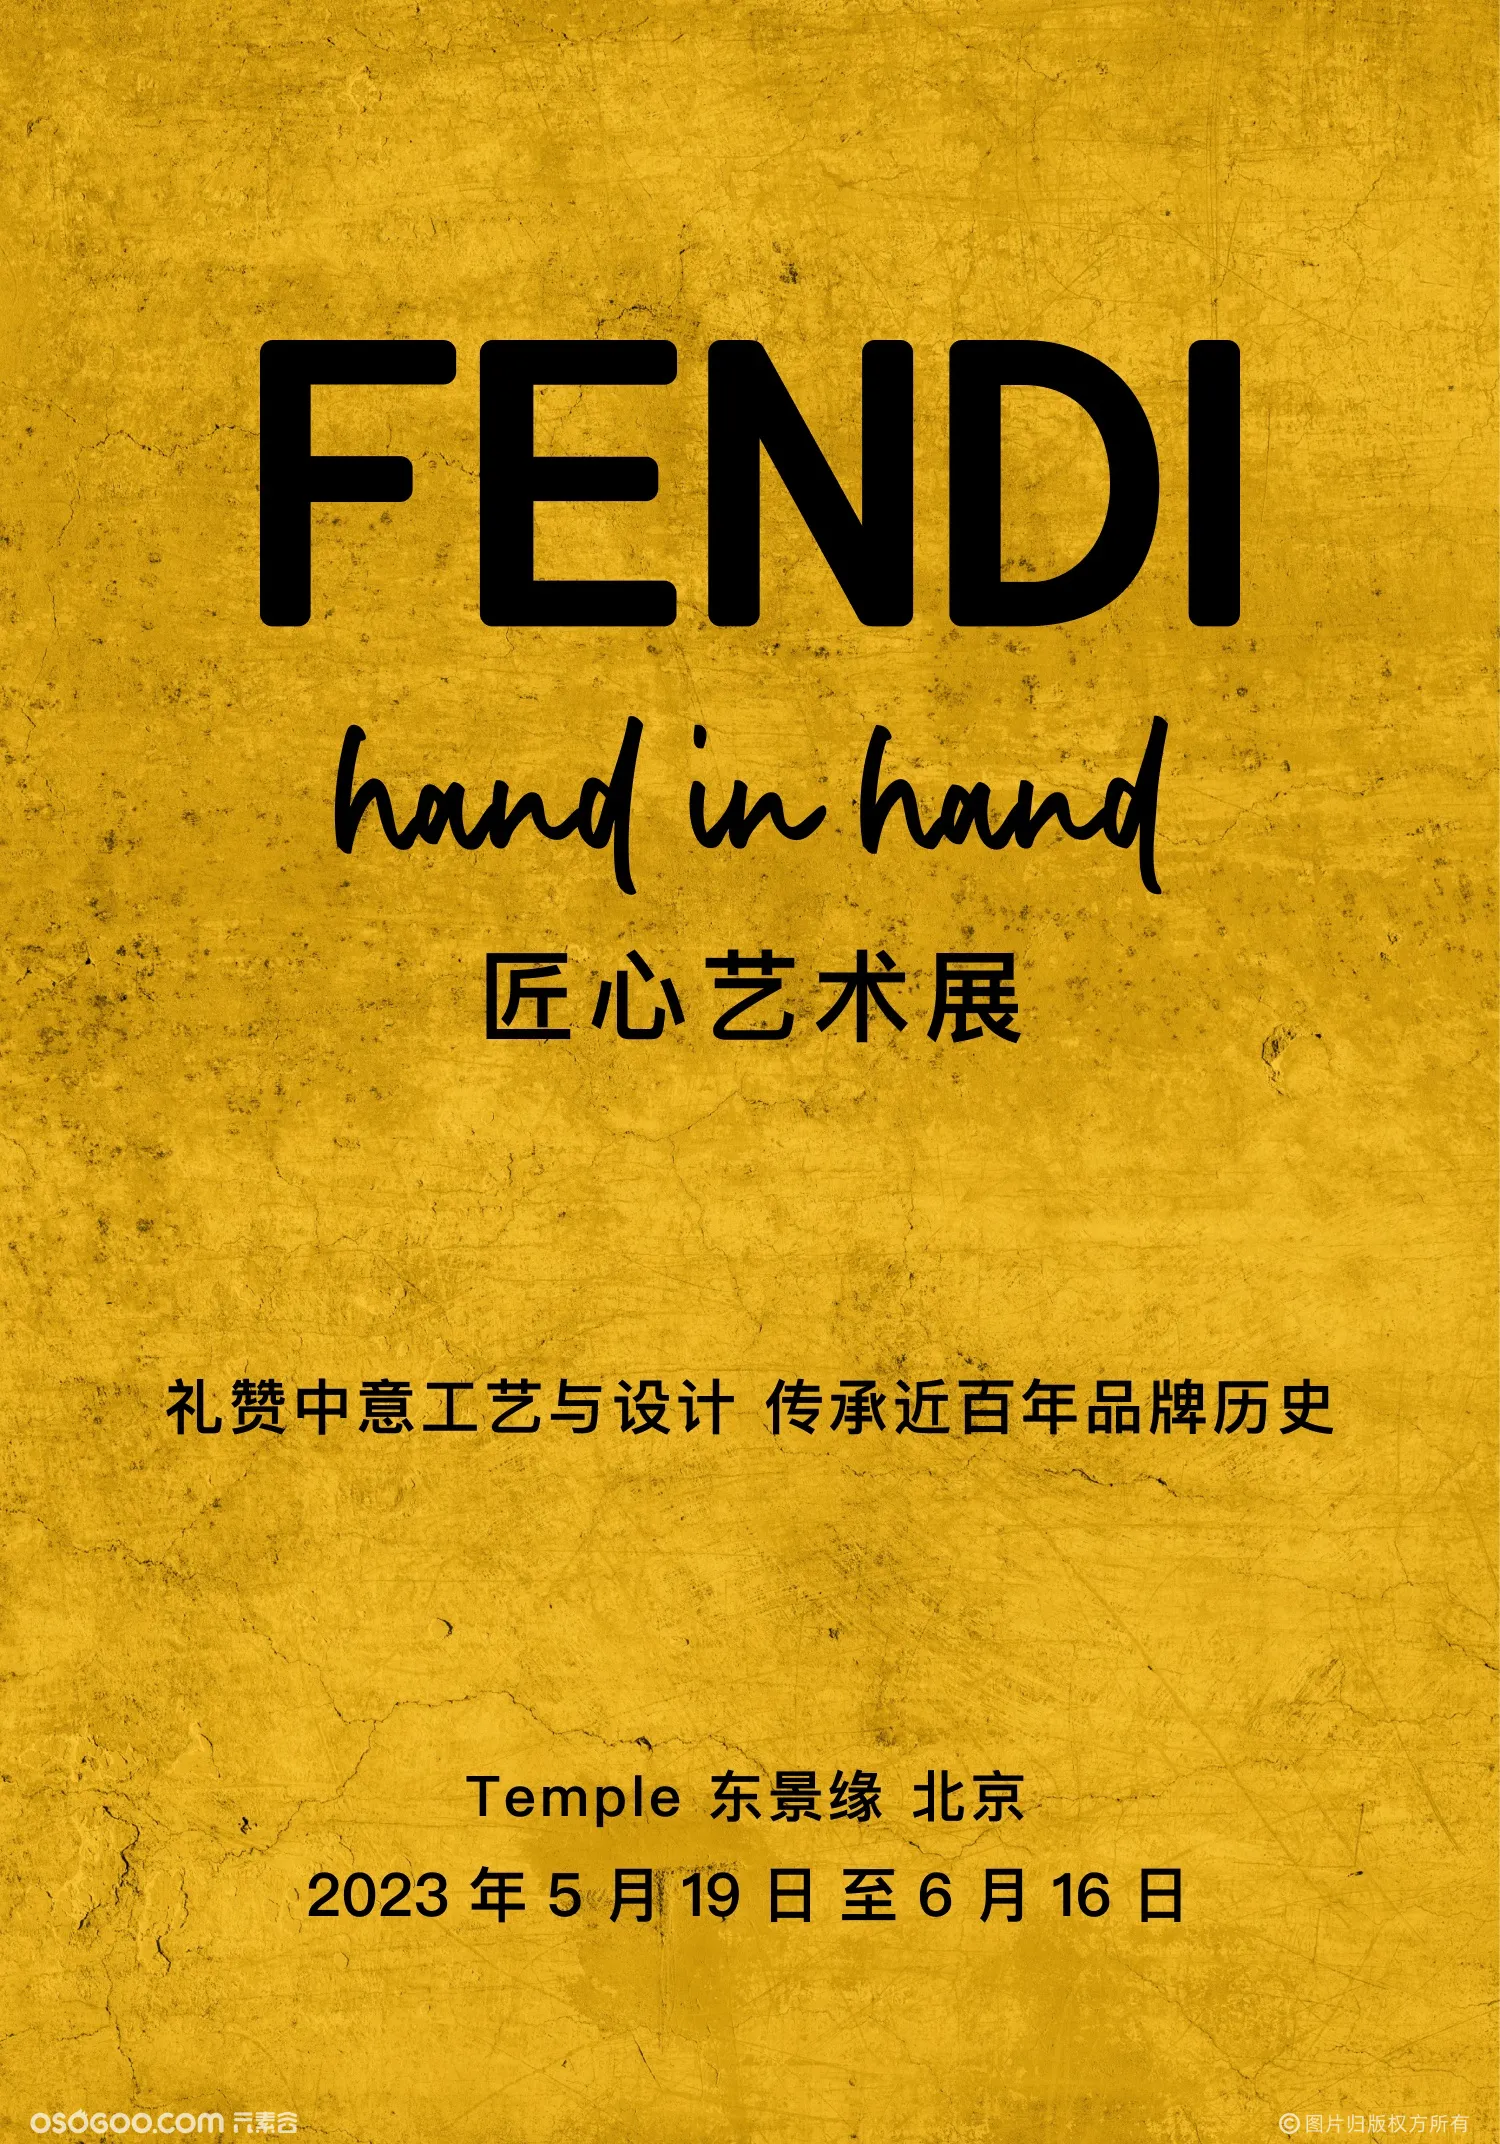 FENDI「hand in hand」匠心艺术展